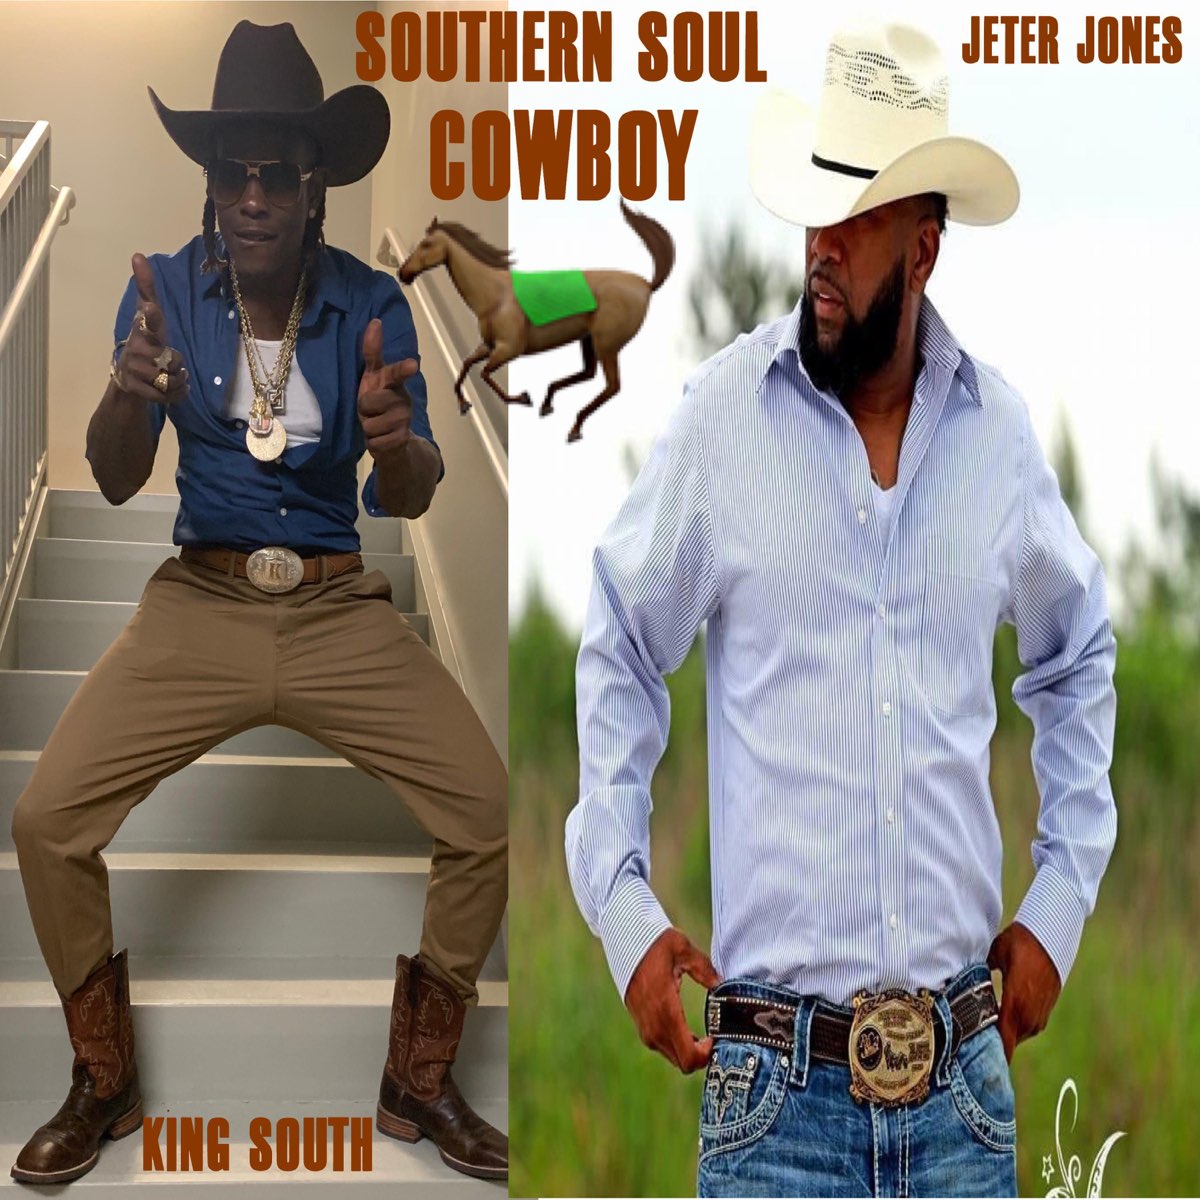 King south southern soul cowboy